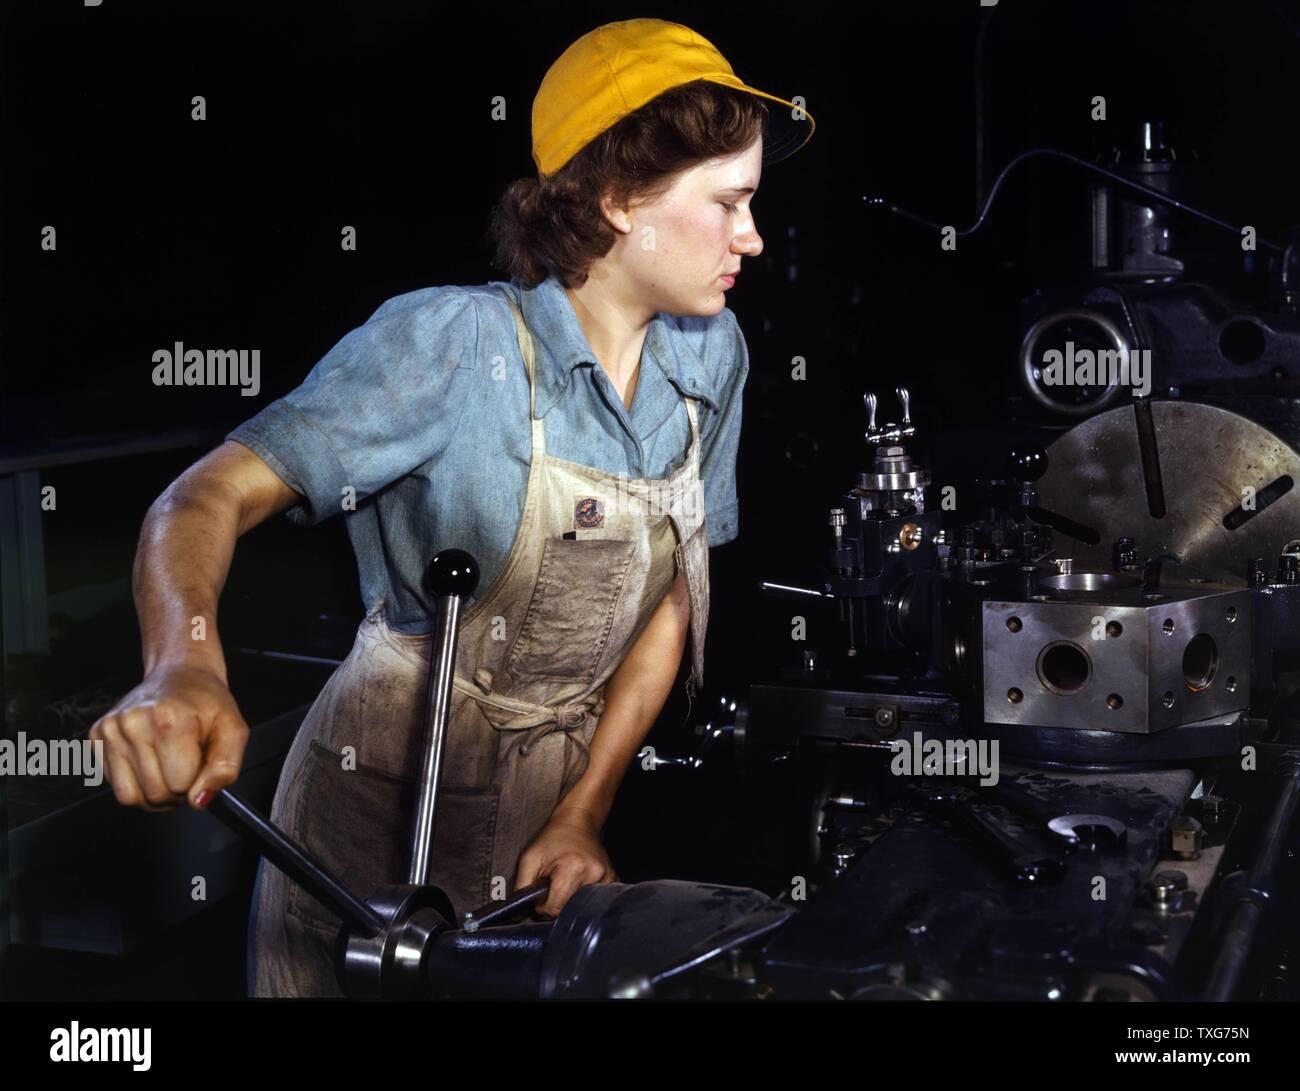 Weltkrieg II: USA weibliche Krieg Arbeiter in den 1940er Jahren. Während des Krieges Frauen auf dem vorderen übernahm viele Aufgaben, die traditionell von Männern durchgeführt. Stockfoto